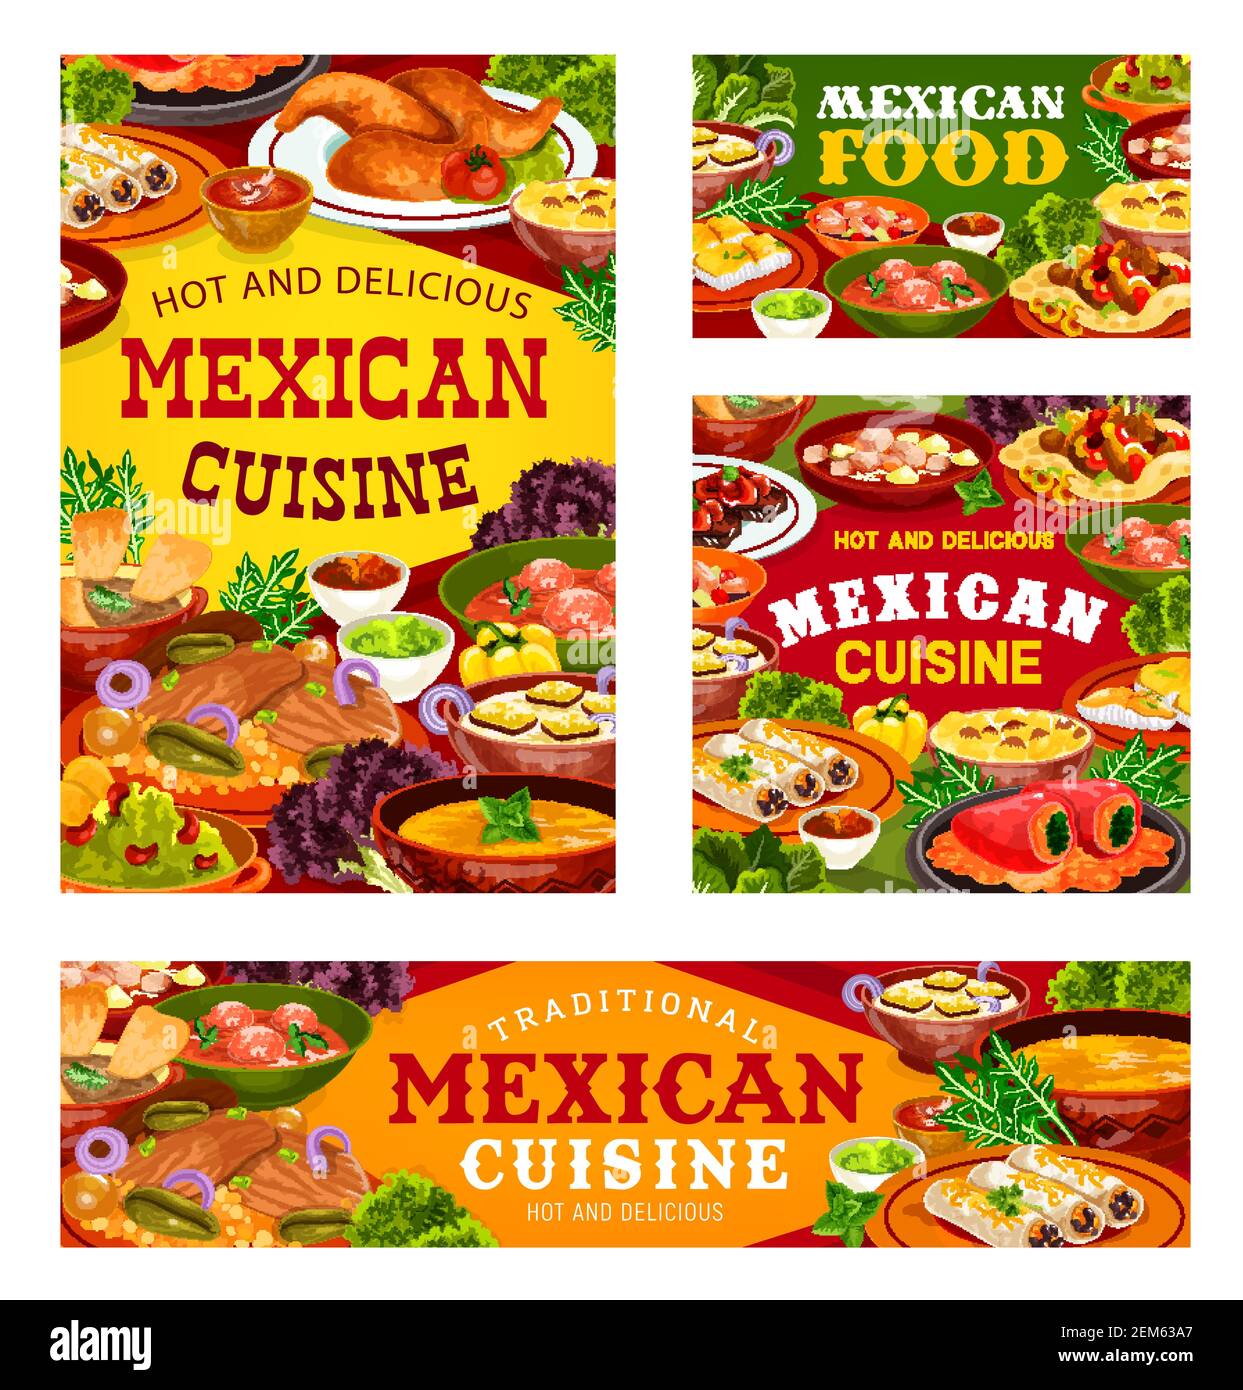 Mexikanische Küche Vektor-Gerichte. Gemüse-, Fleisch- und Fischgerichte von Burritos, Fajitas mit Salsa- und Guacamole-Saucen, gefüllte Paprika, Chicken Wings, tom Stock Vektor